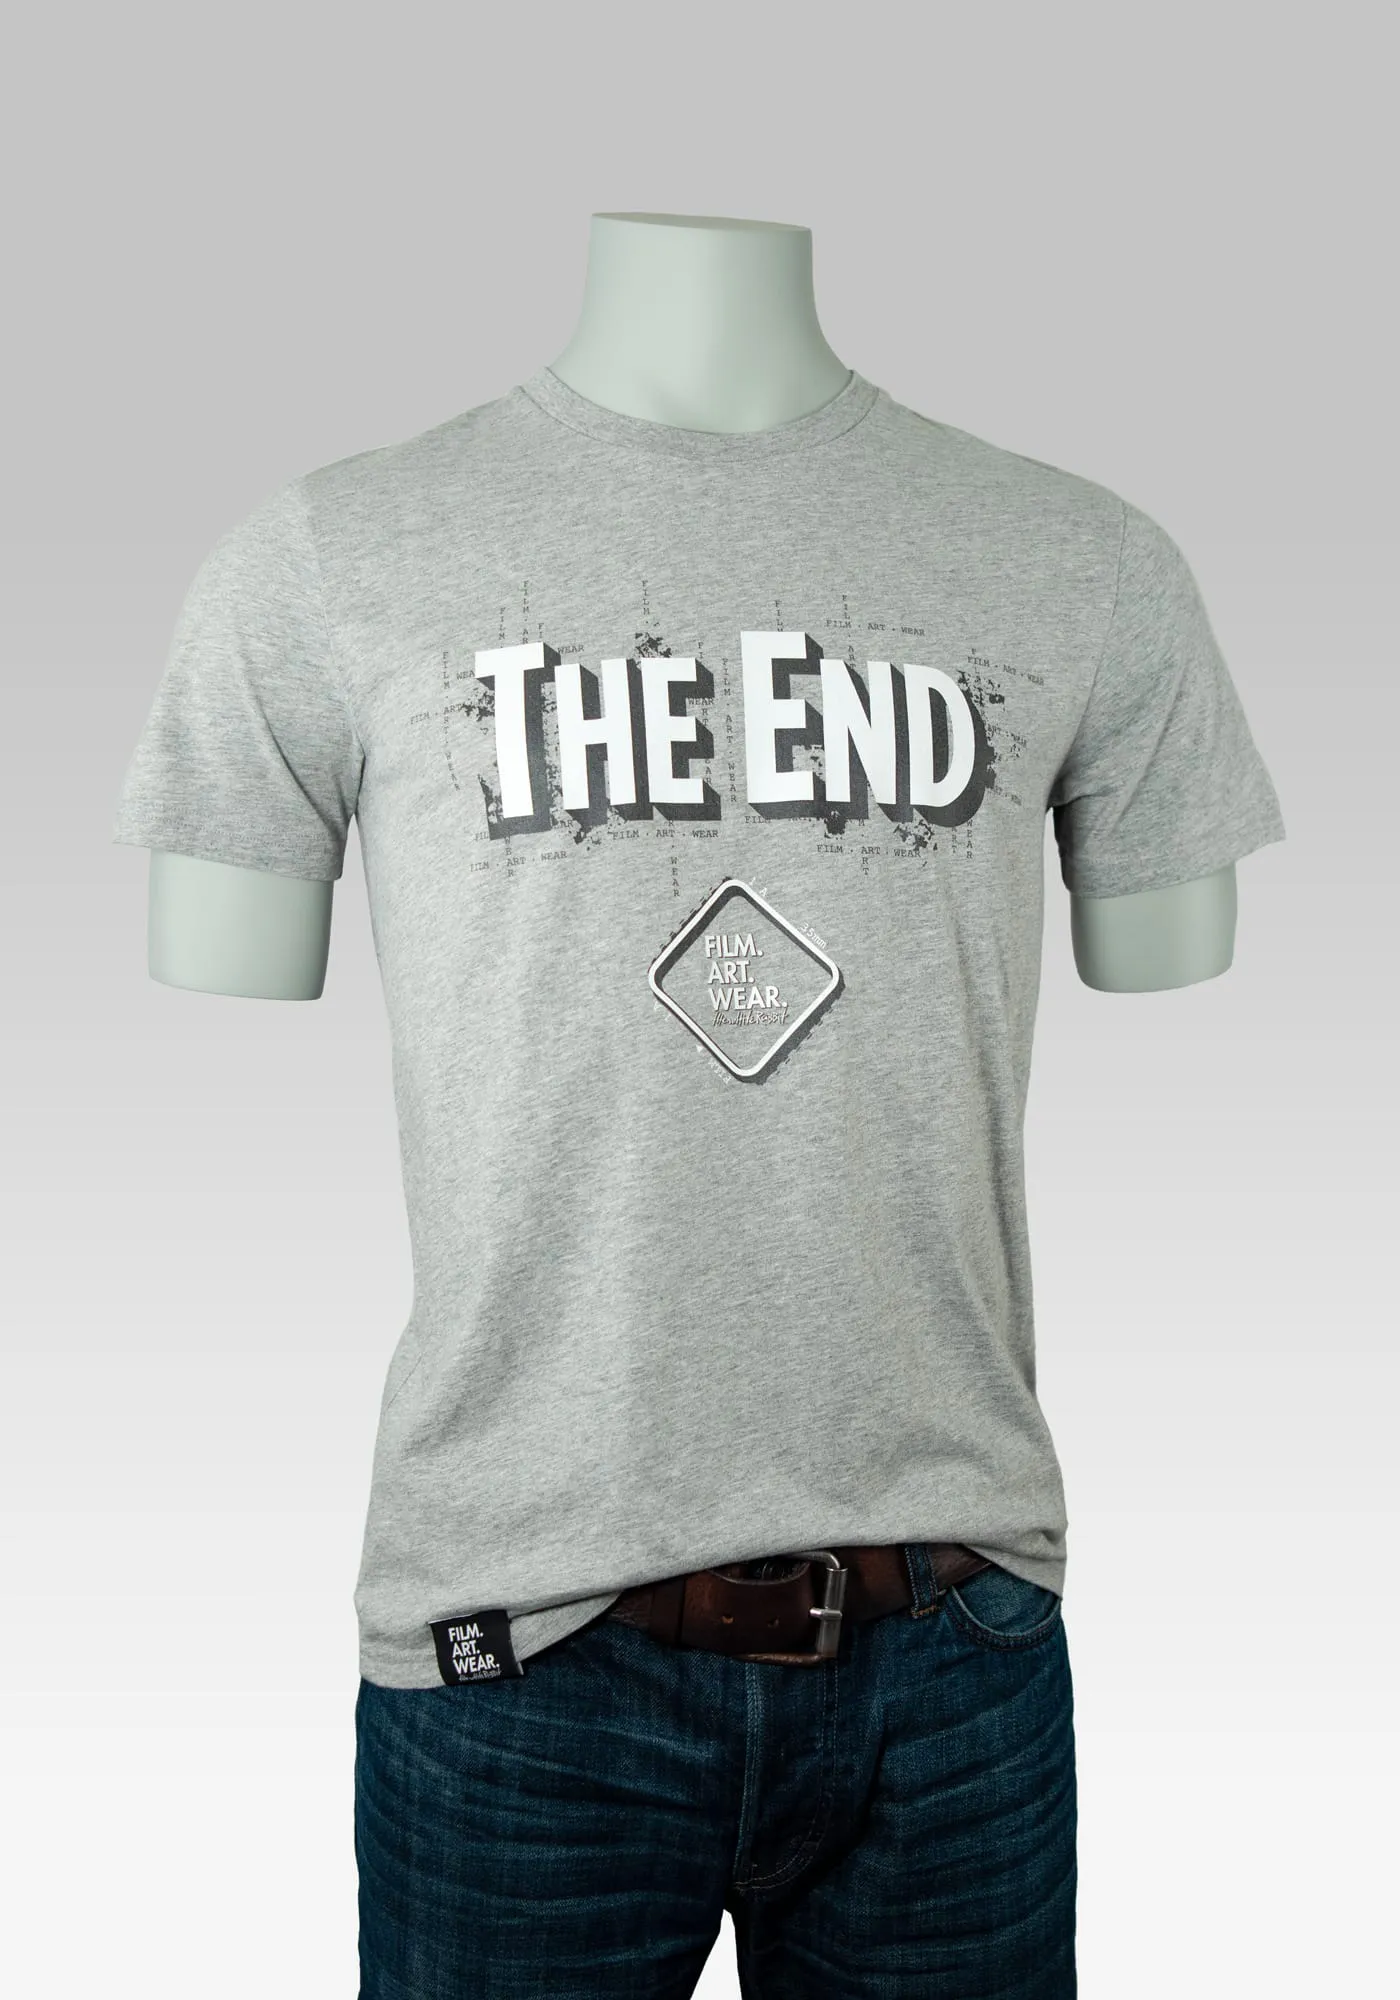 The End Filmliebhaber T-Shirt mit Typografie Print auf der Brust